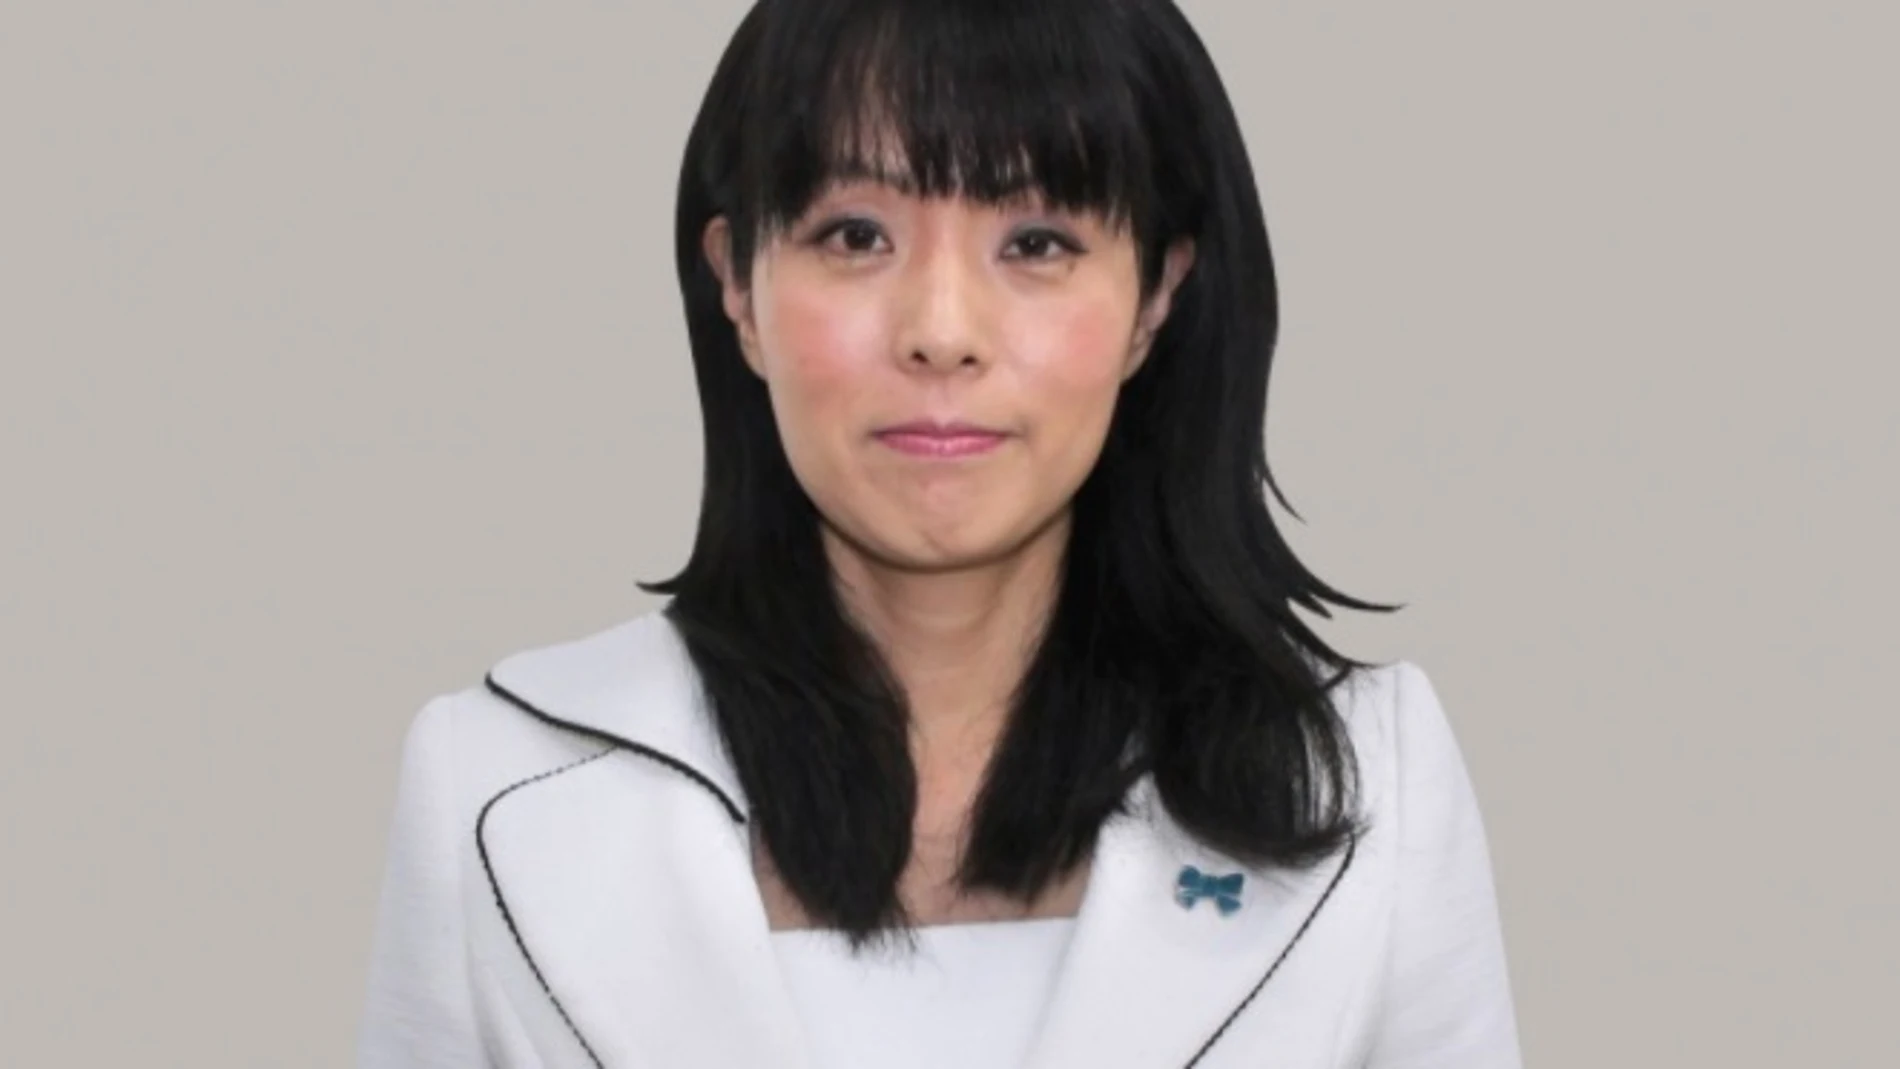 Mio Sugita, diputada del Partido Liberal Democrático (PLD), cuenta con un buen historial por atacar al feminismo y a miembros de la comunidad LGTBI